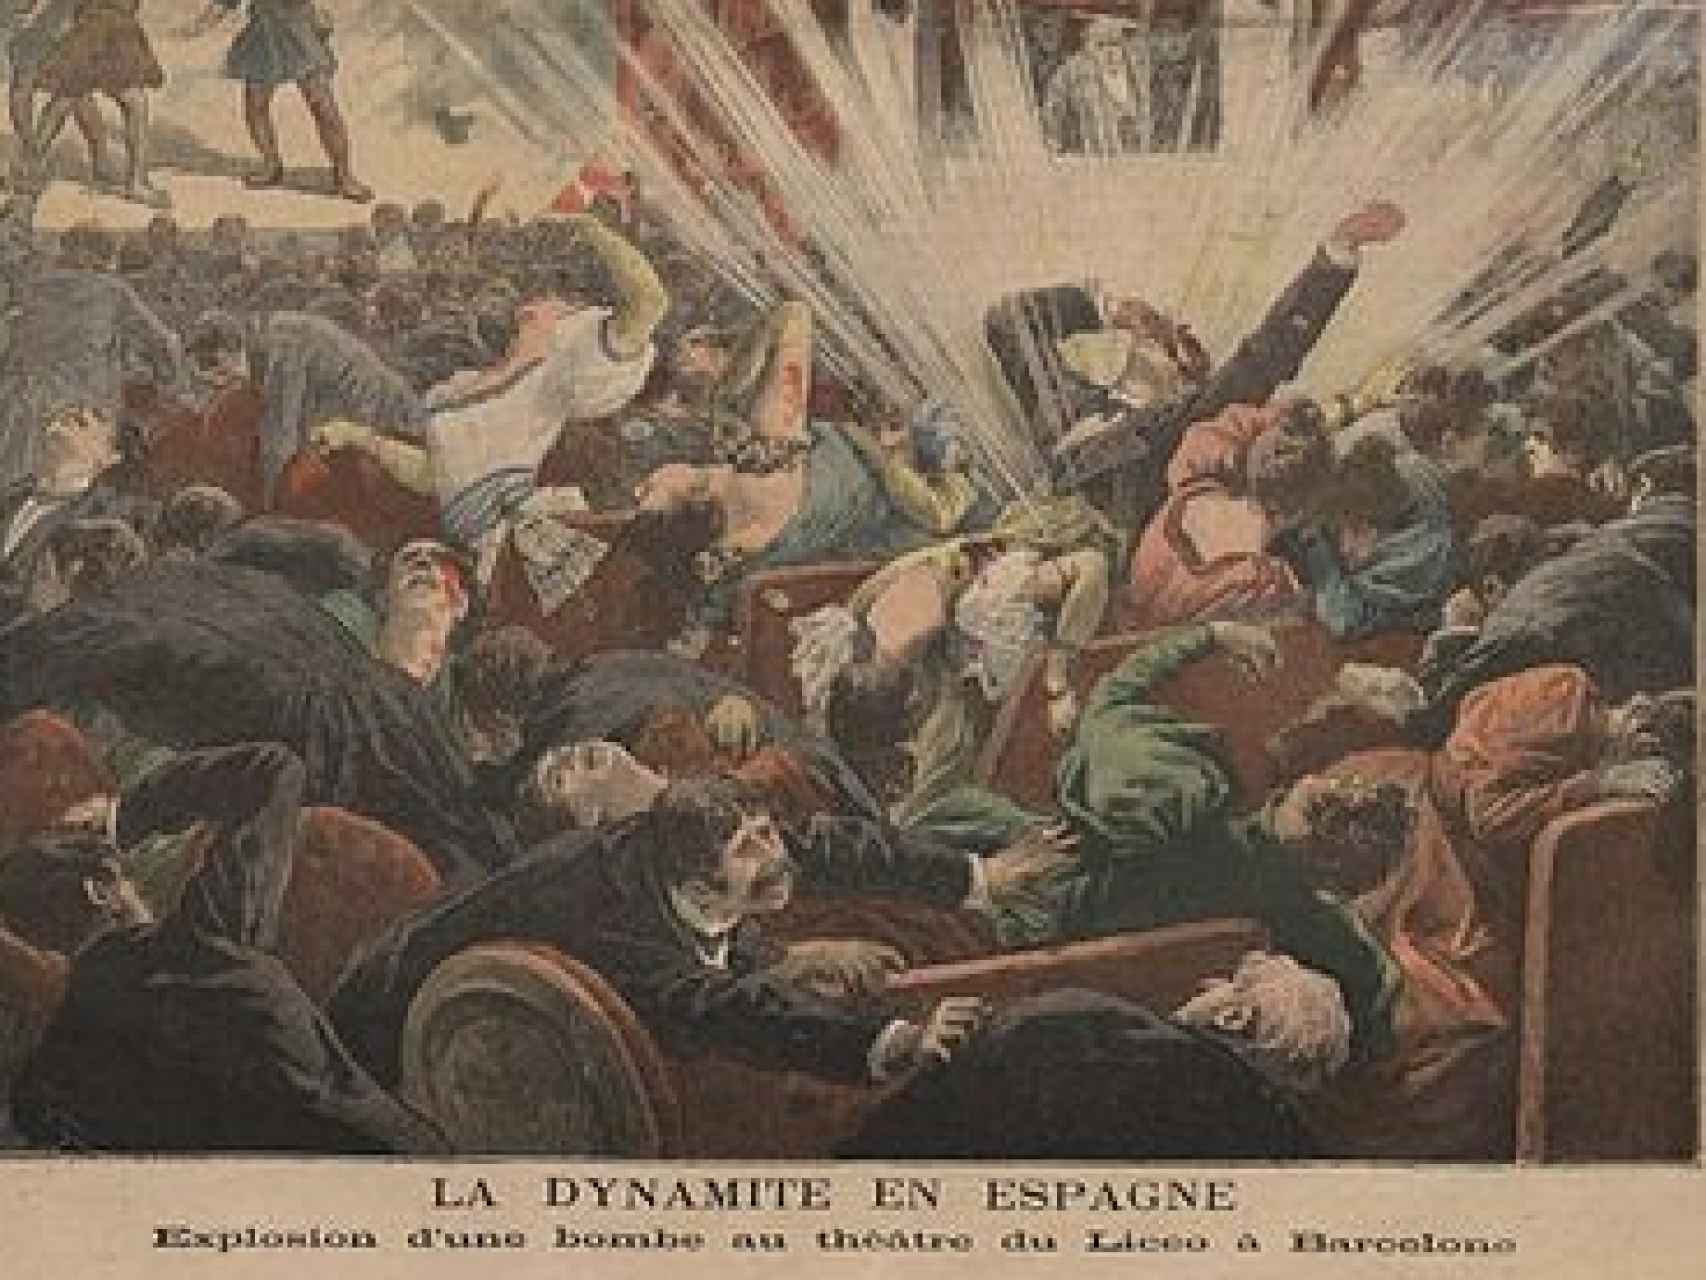 Portada de Le Petit Journal, informando de un atentado en el Liceo.